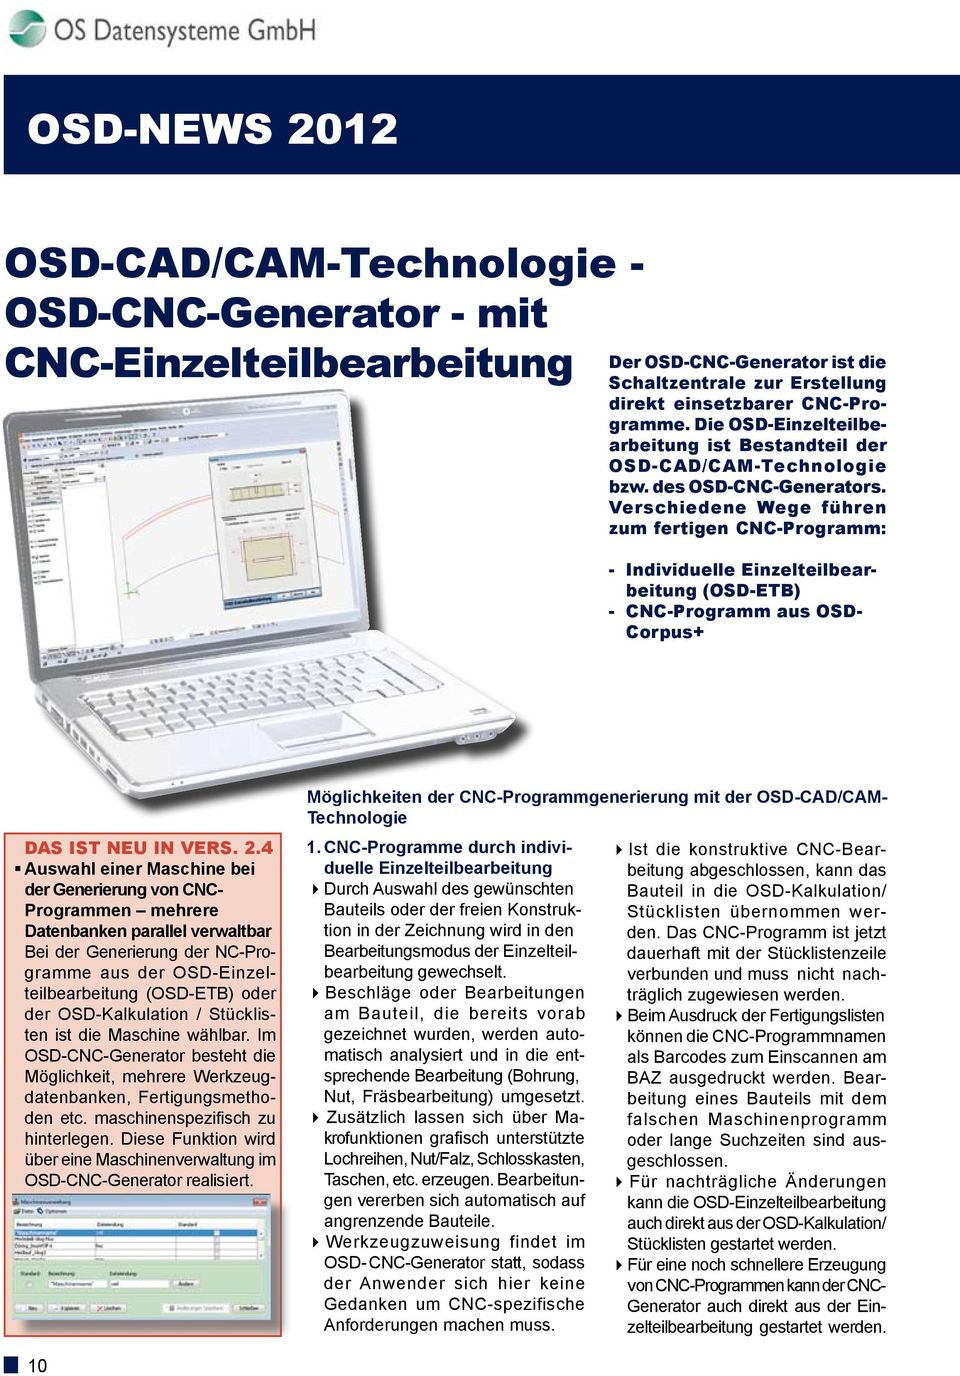 Verschiedene Wege führen zum fertigen CNC-Programm: - Individuelle Einzelteilbearbeitung (OSD-ETB) - CNC-Programm aus OSD- Corpus+ Das ist NEU in Vers. 2.